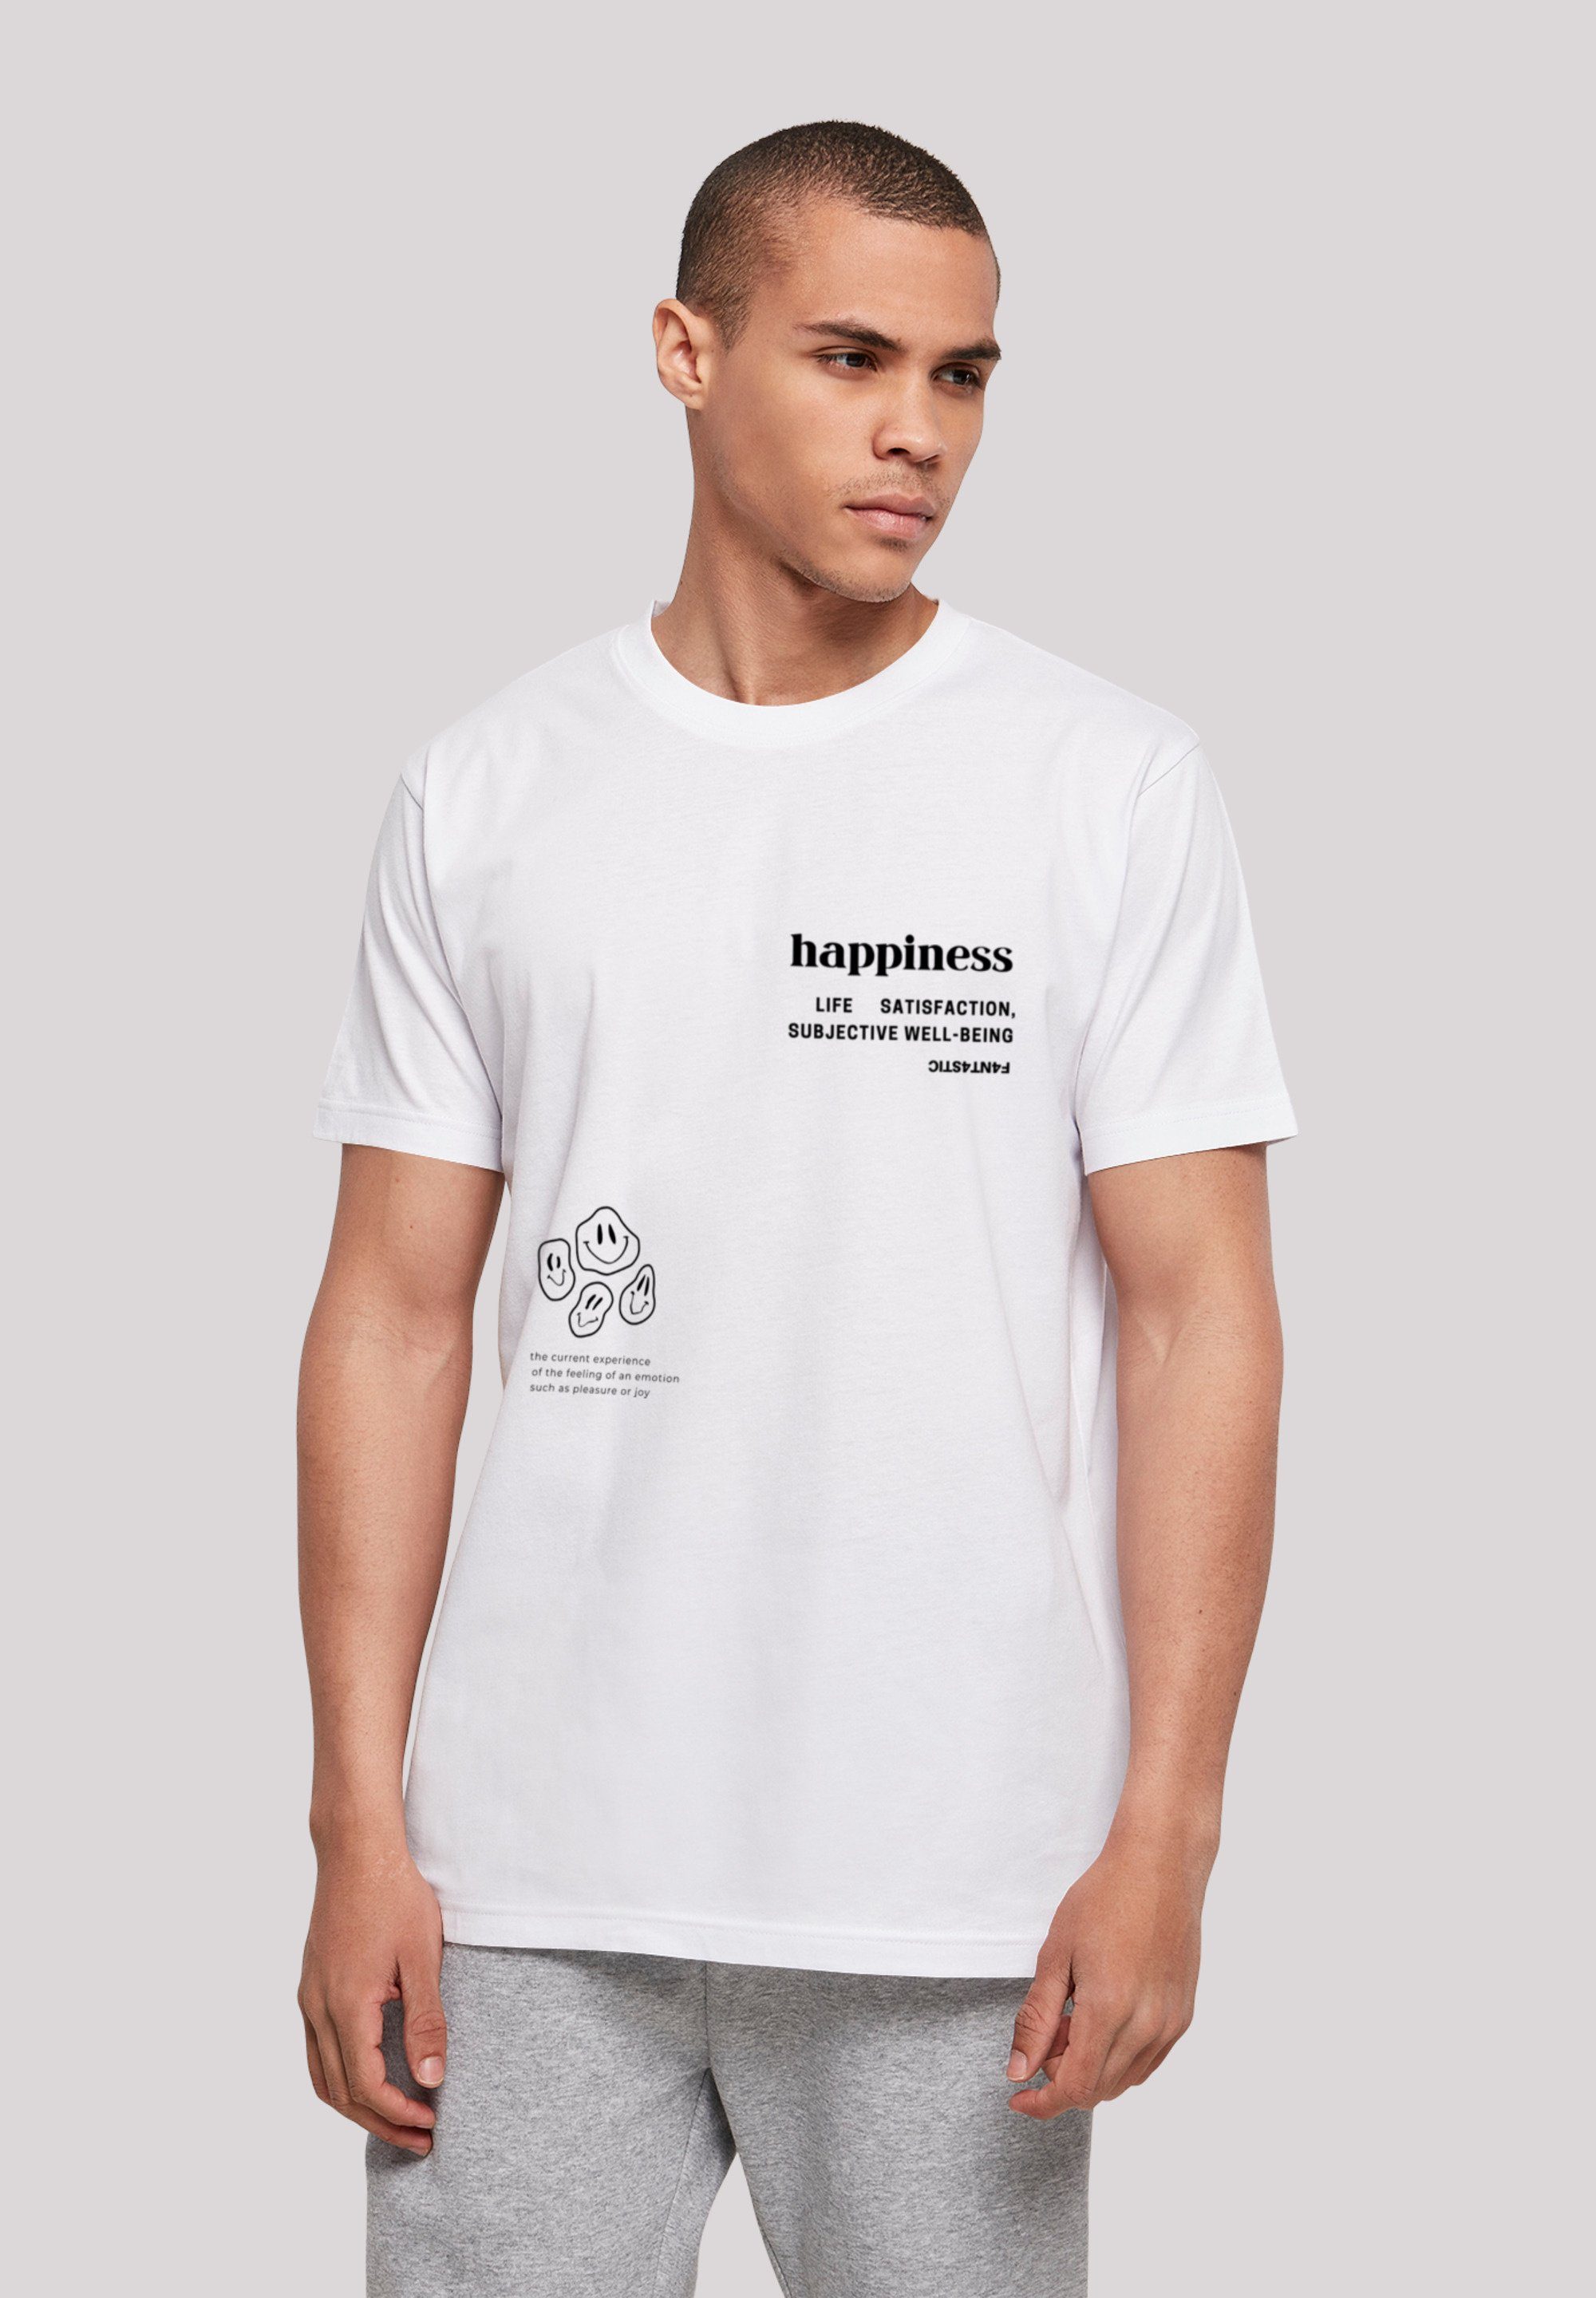 T-Shirt UNISEX F4NT4STIC weiß TEE happiness Print